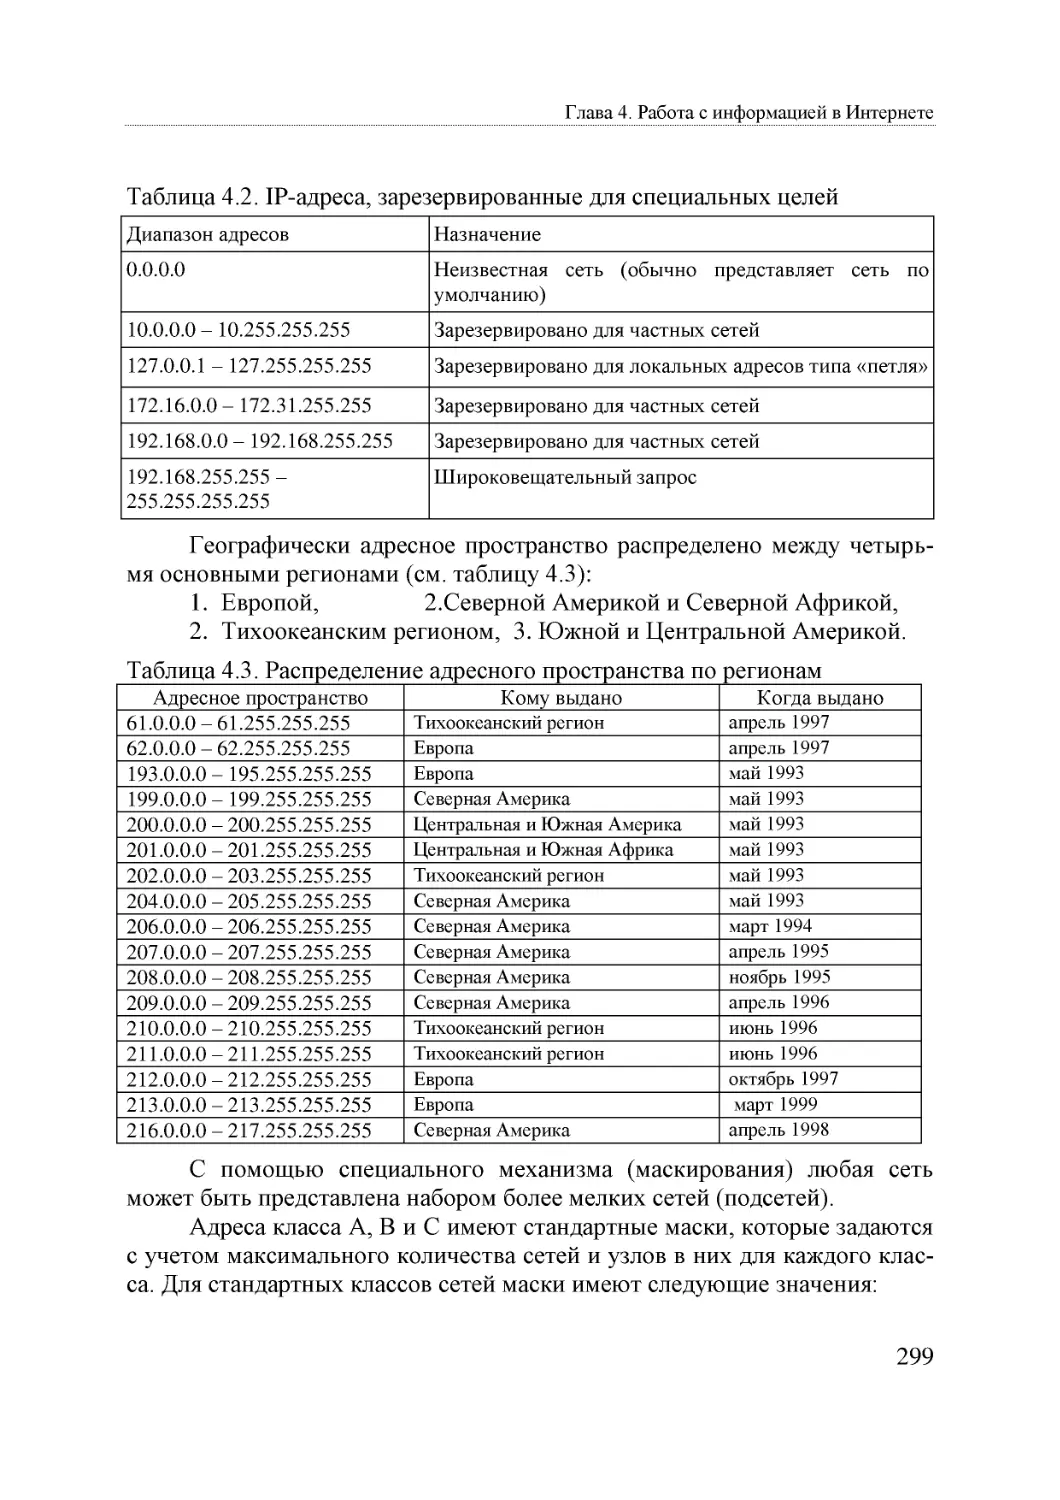 Informatika_Uchebnik_dlya_vuzov_2010 299